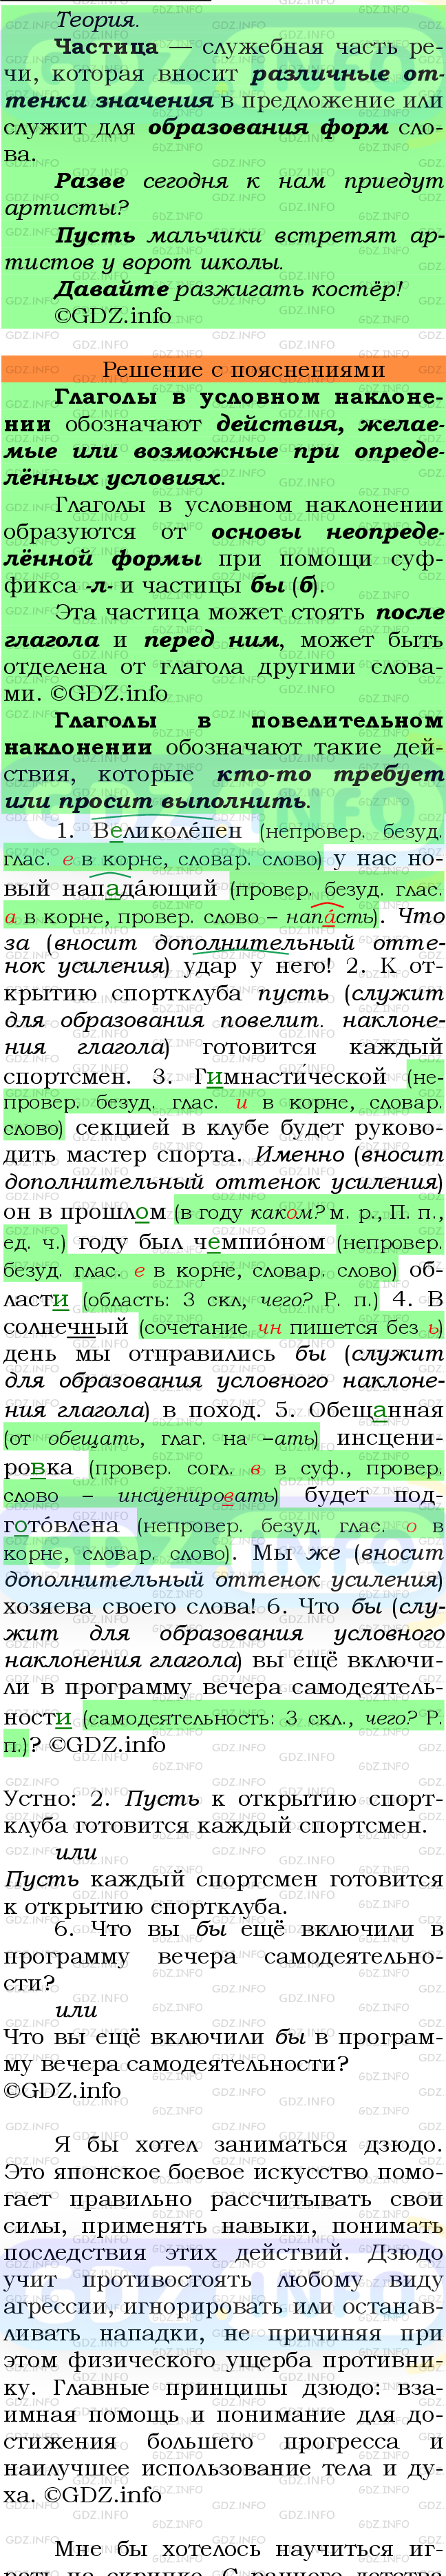 Фото подробного решения: Номер №494 из ГДЗ по Русскому языку 7 класс: Ладыженская Т.А.